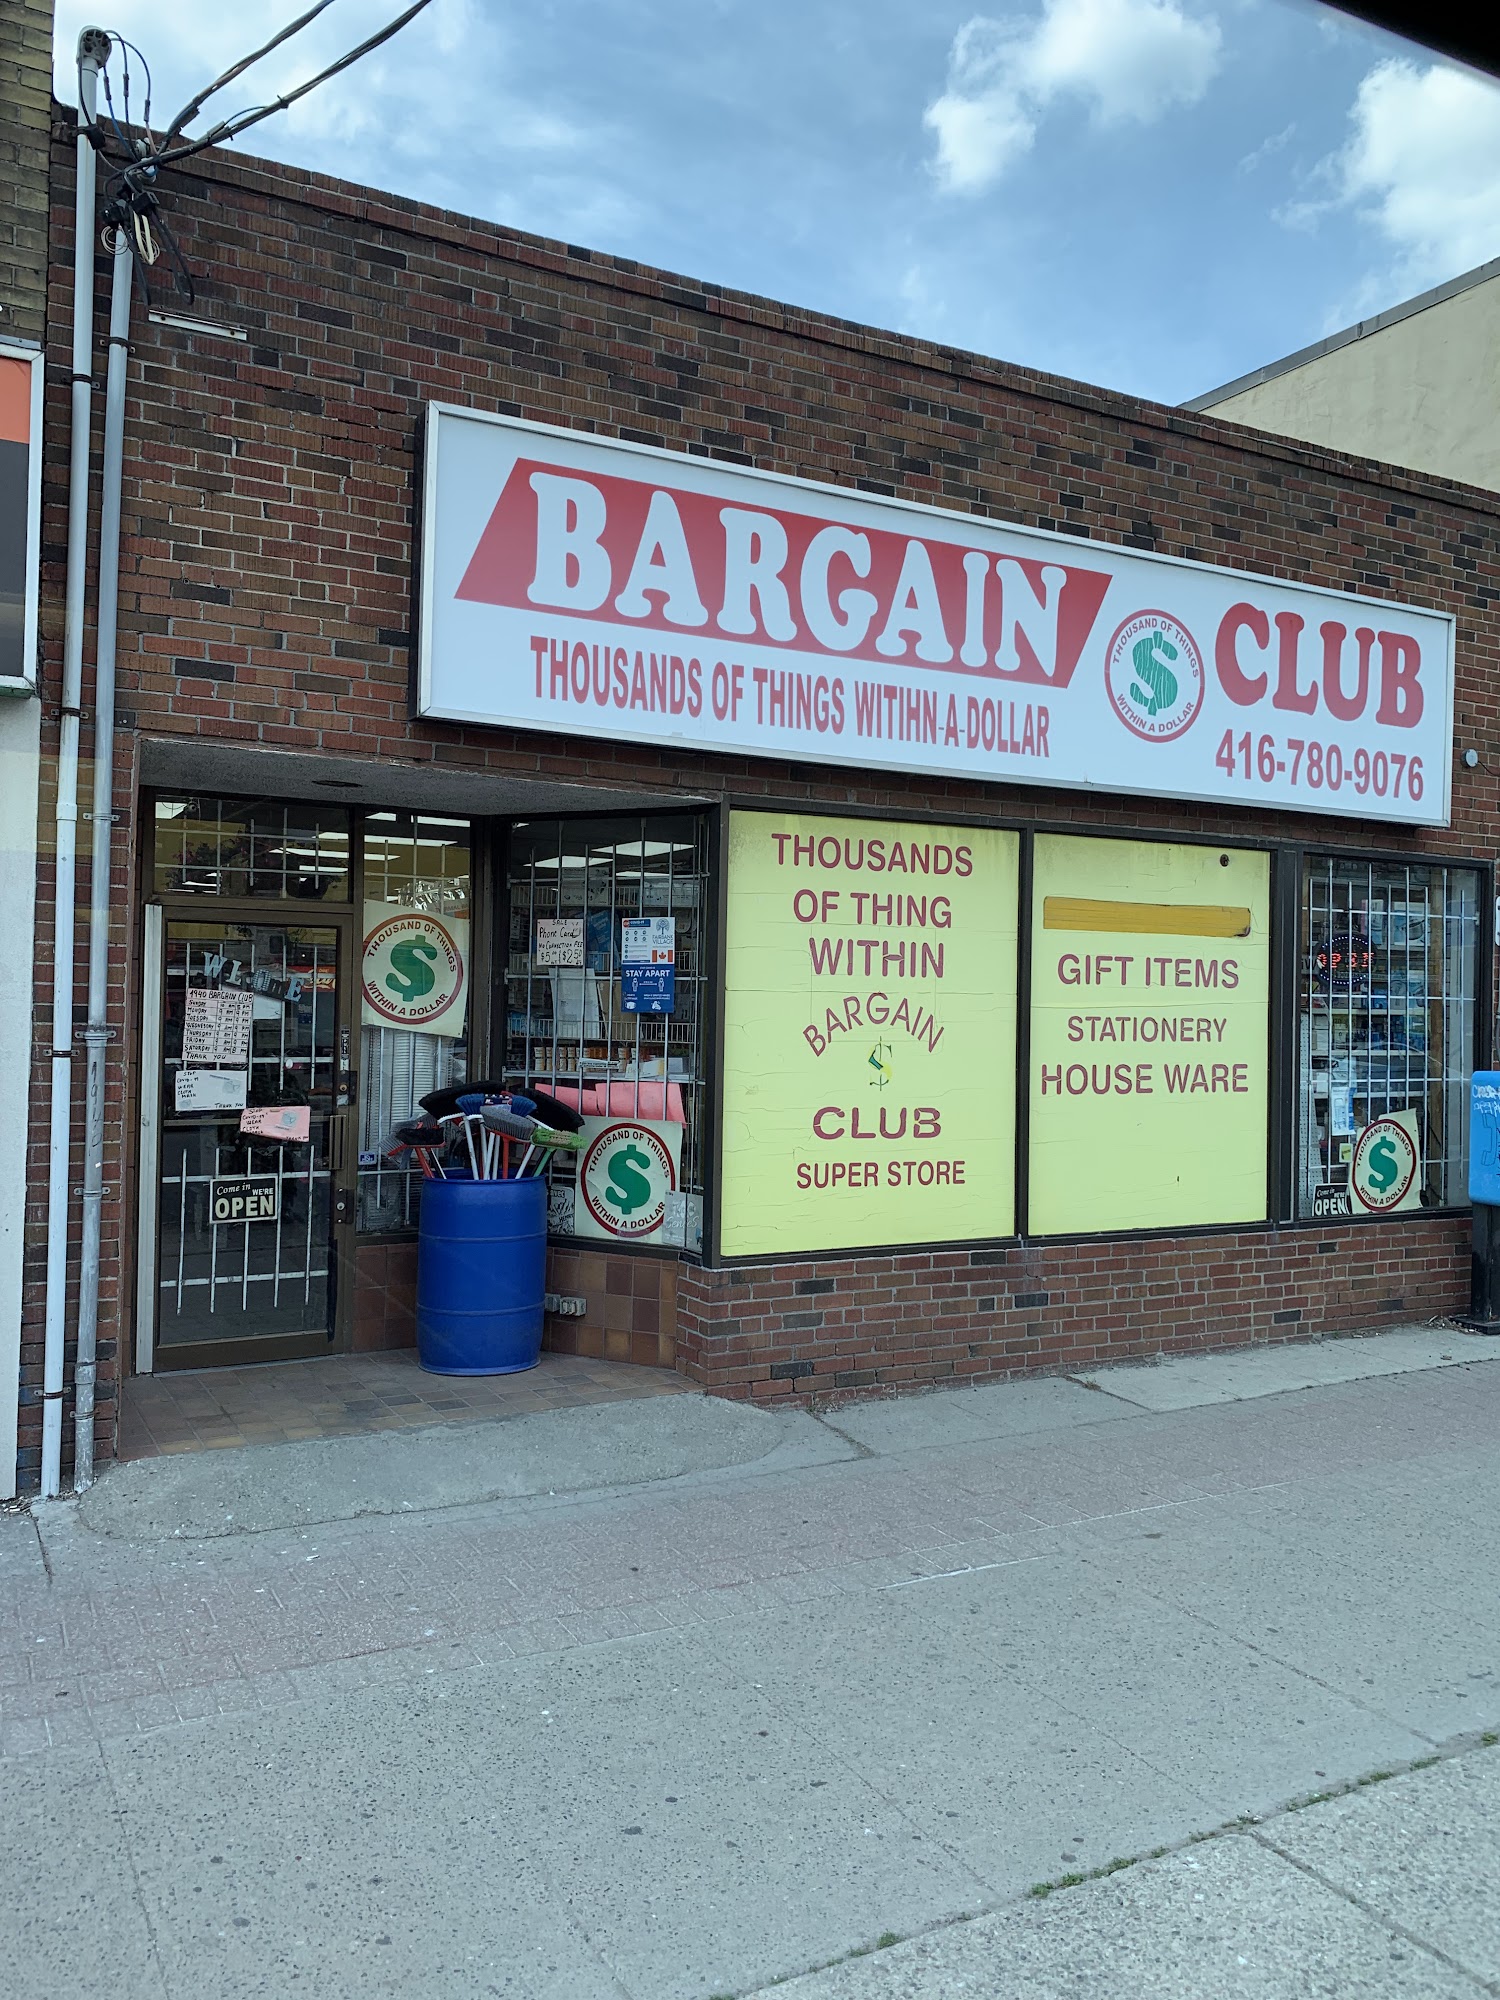 Bargain Club